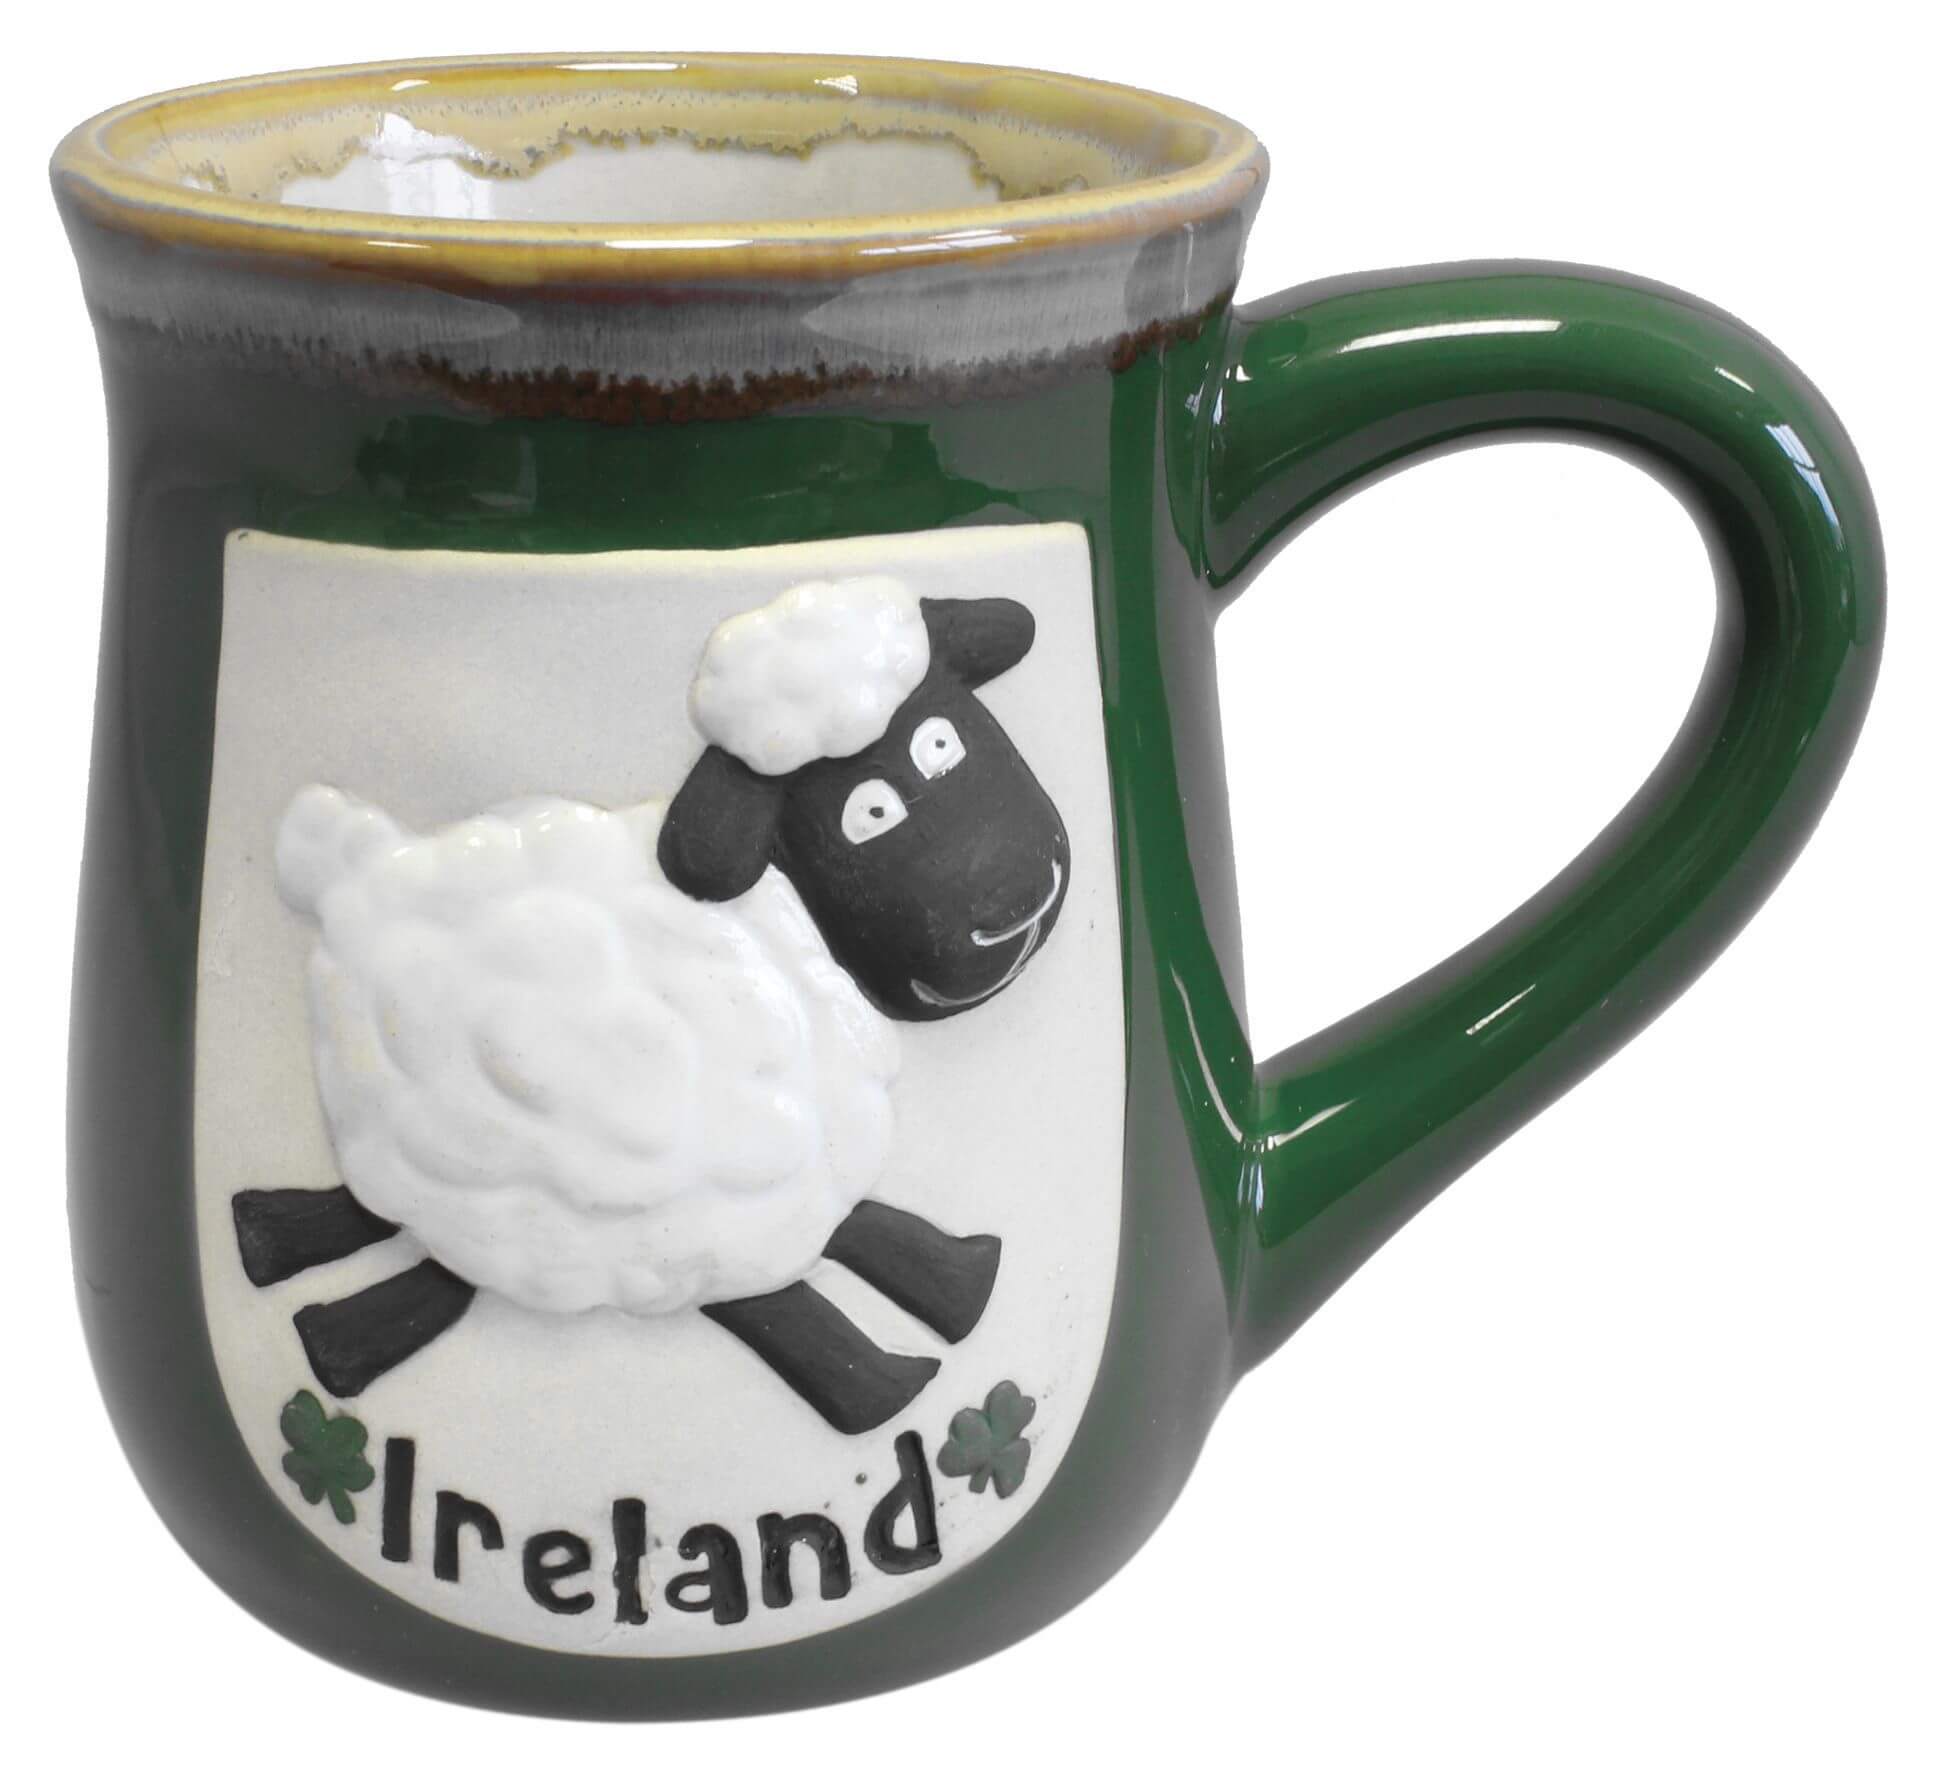 Grüner Keramikbecher mit lustigem irischem Schaf und IRELAND Schriftzug